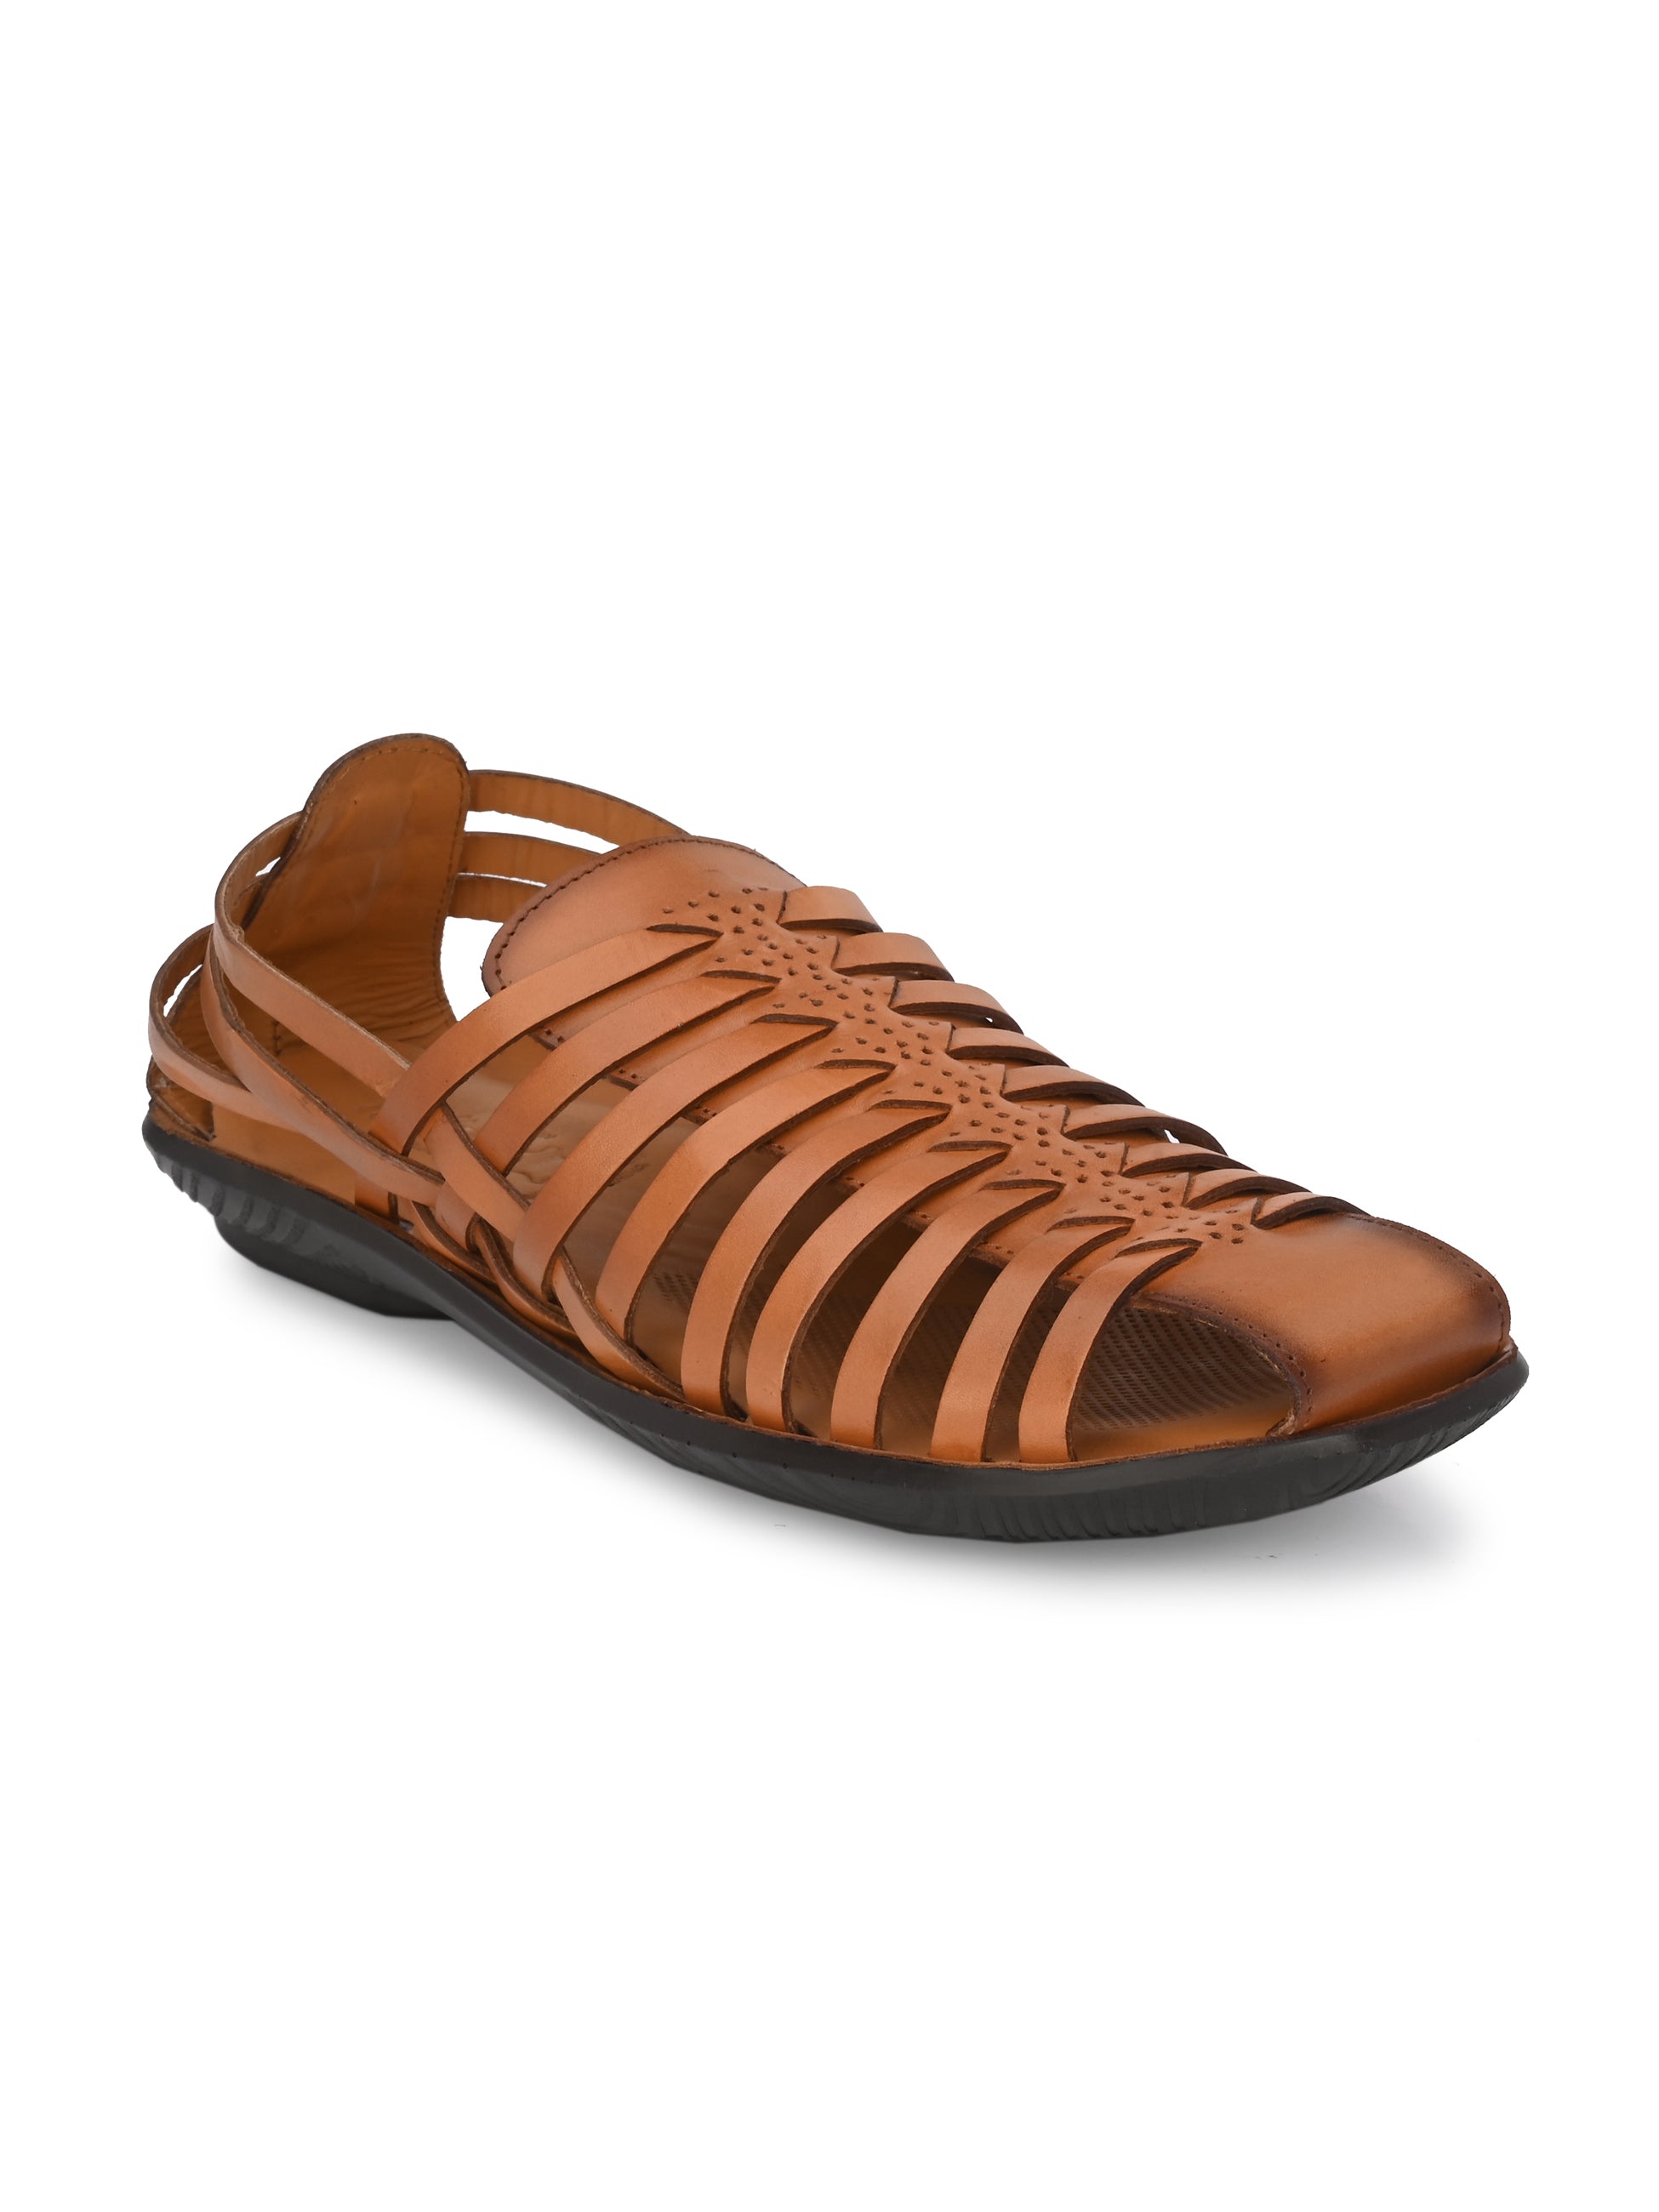 Leather Flip Flop Sandals Tan | Melissa Odabash US